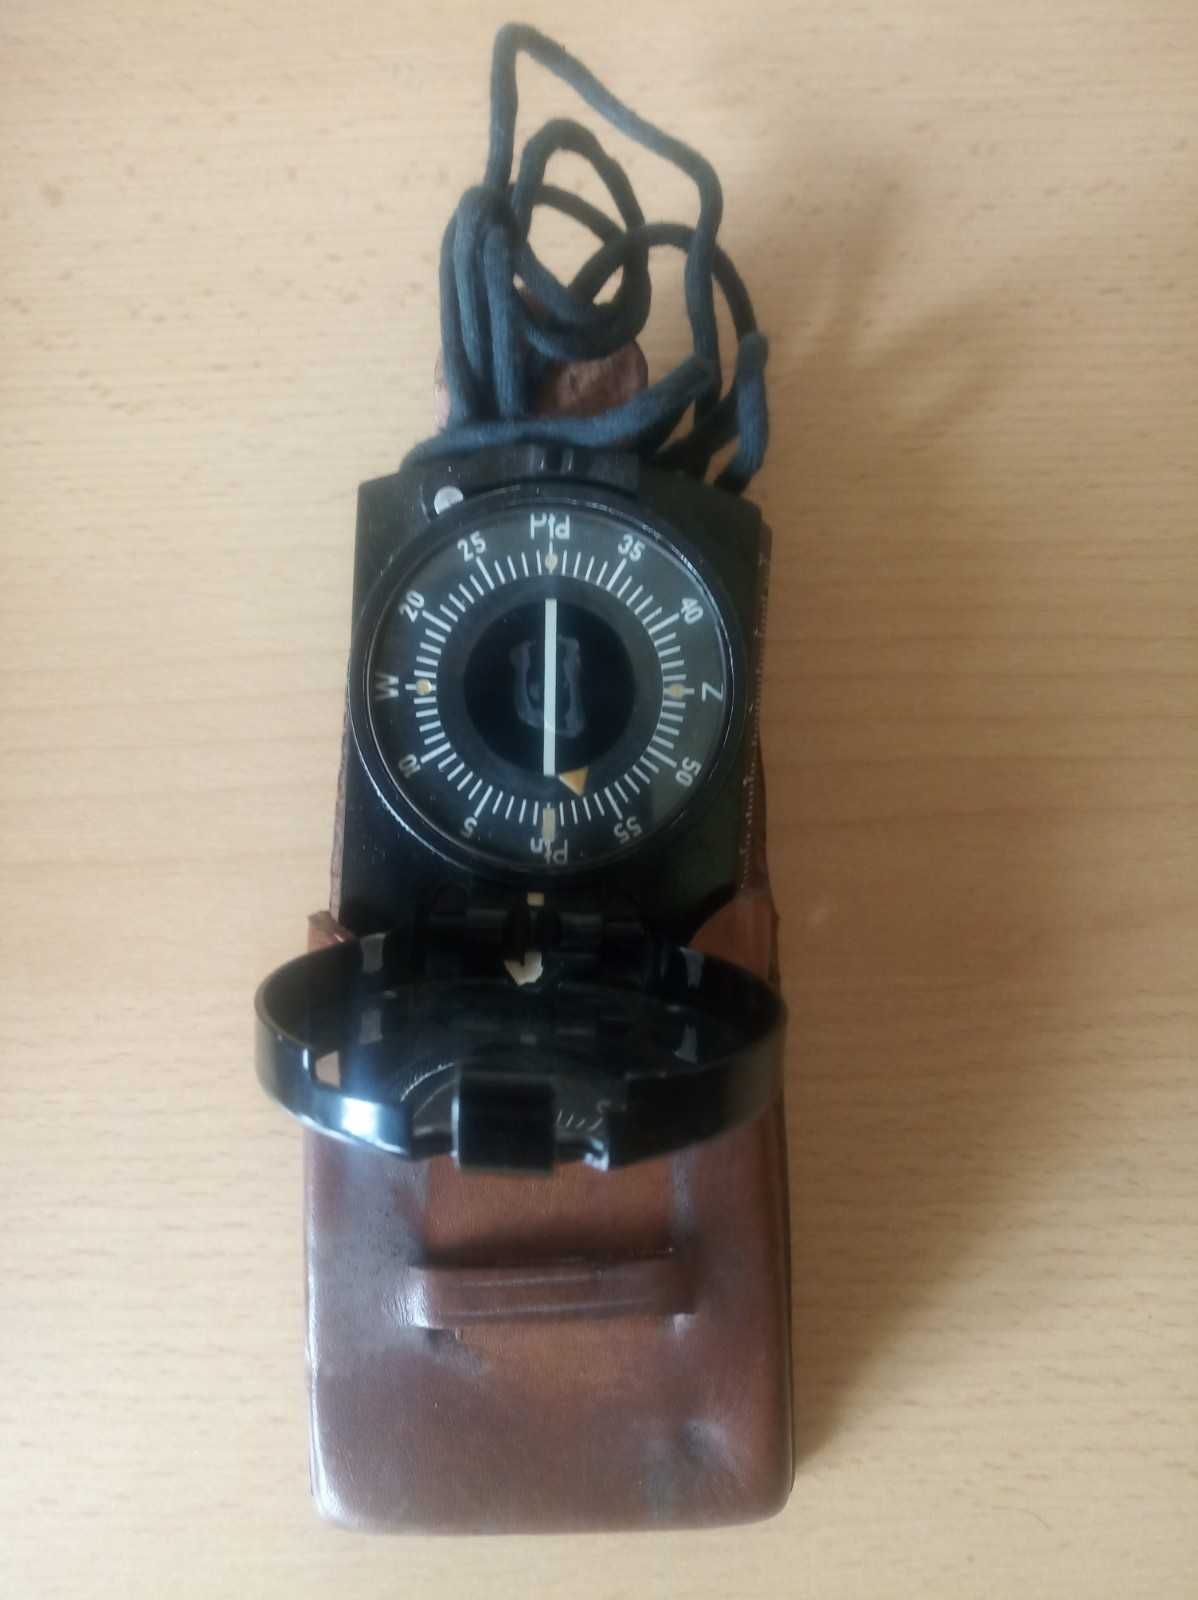 Oryginalny kompas wojskowy AK z 1959 roku